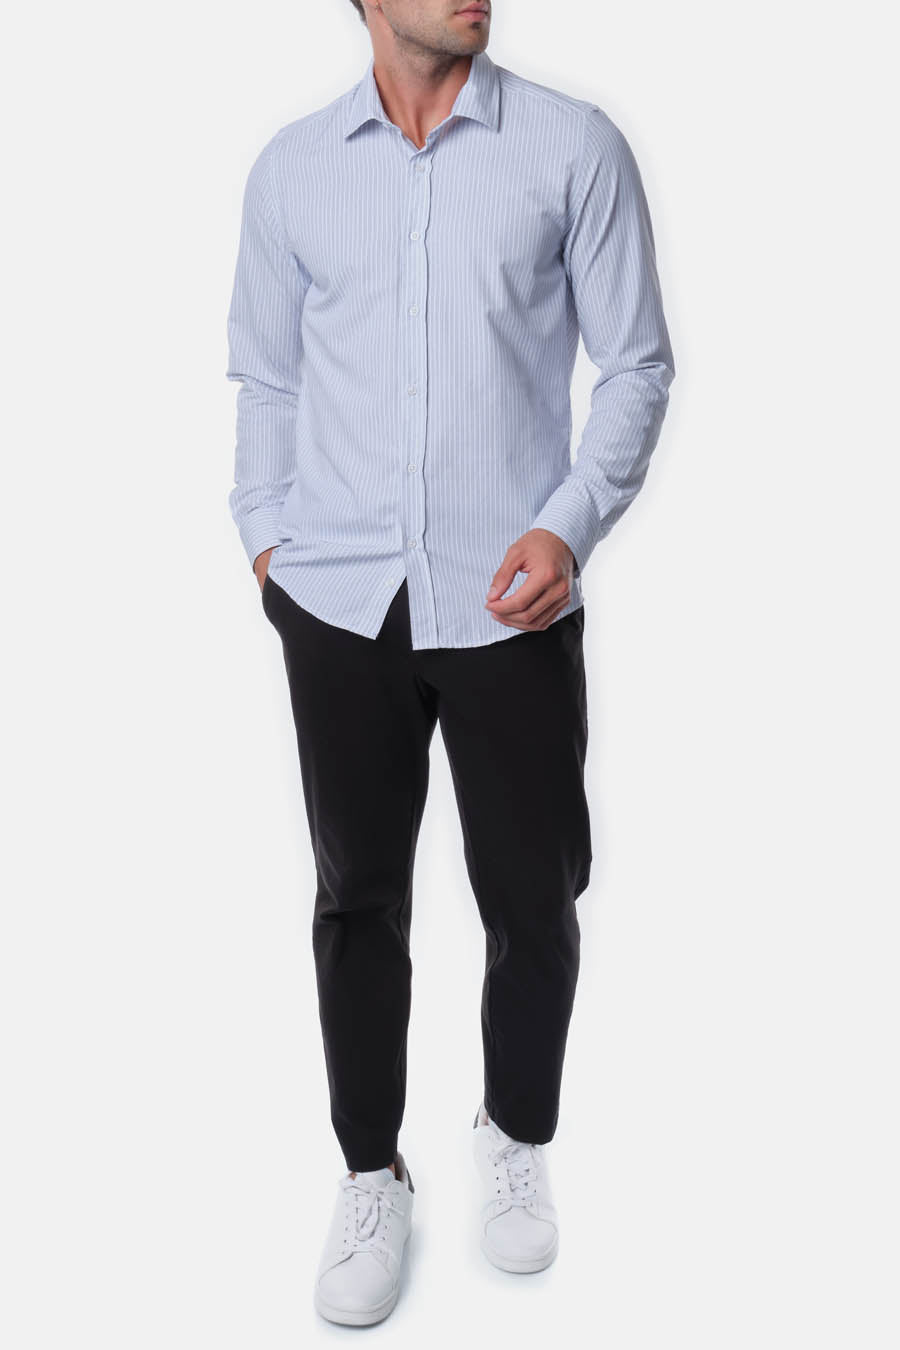 Ανδρικό πουκάμισο Keon, Λευκό/Μπλε 5